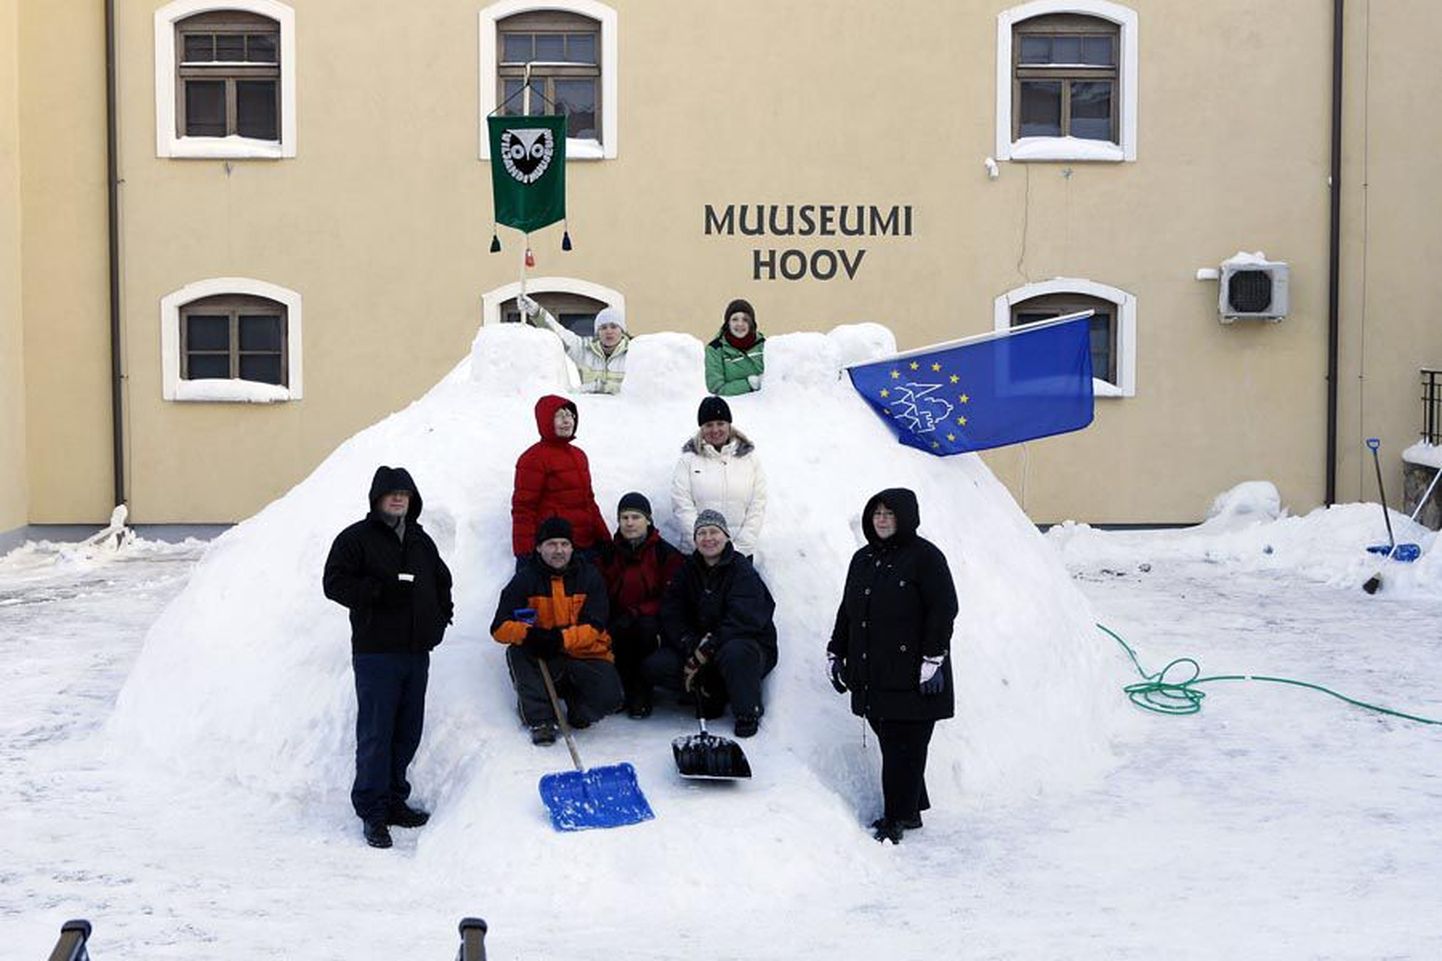 Hiljuti lumest kindluse rajanud muuseumirahva esimene lahing tormaka
reformi vastu on võidetud.